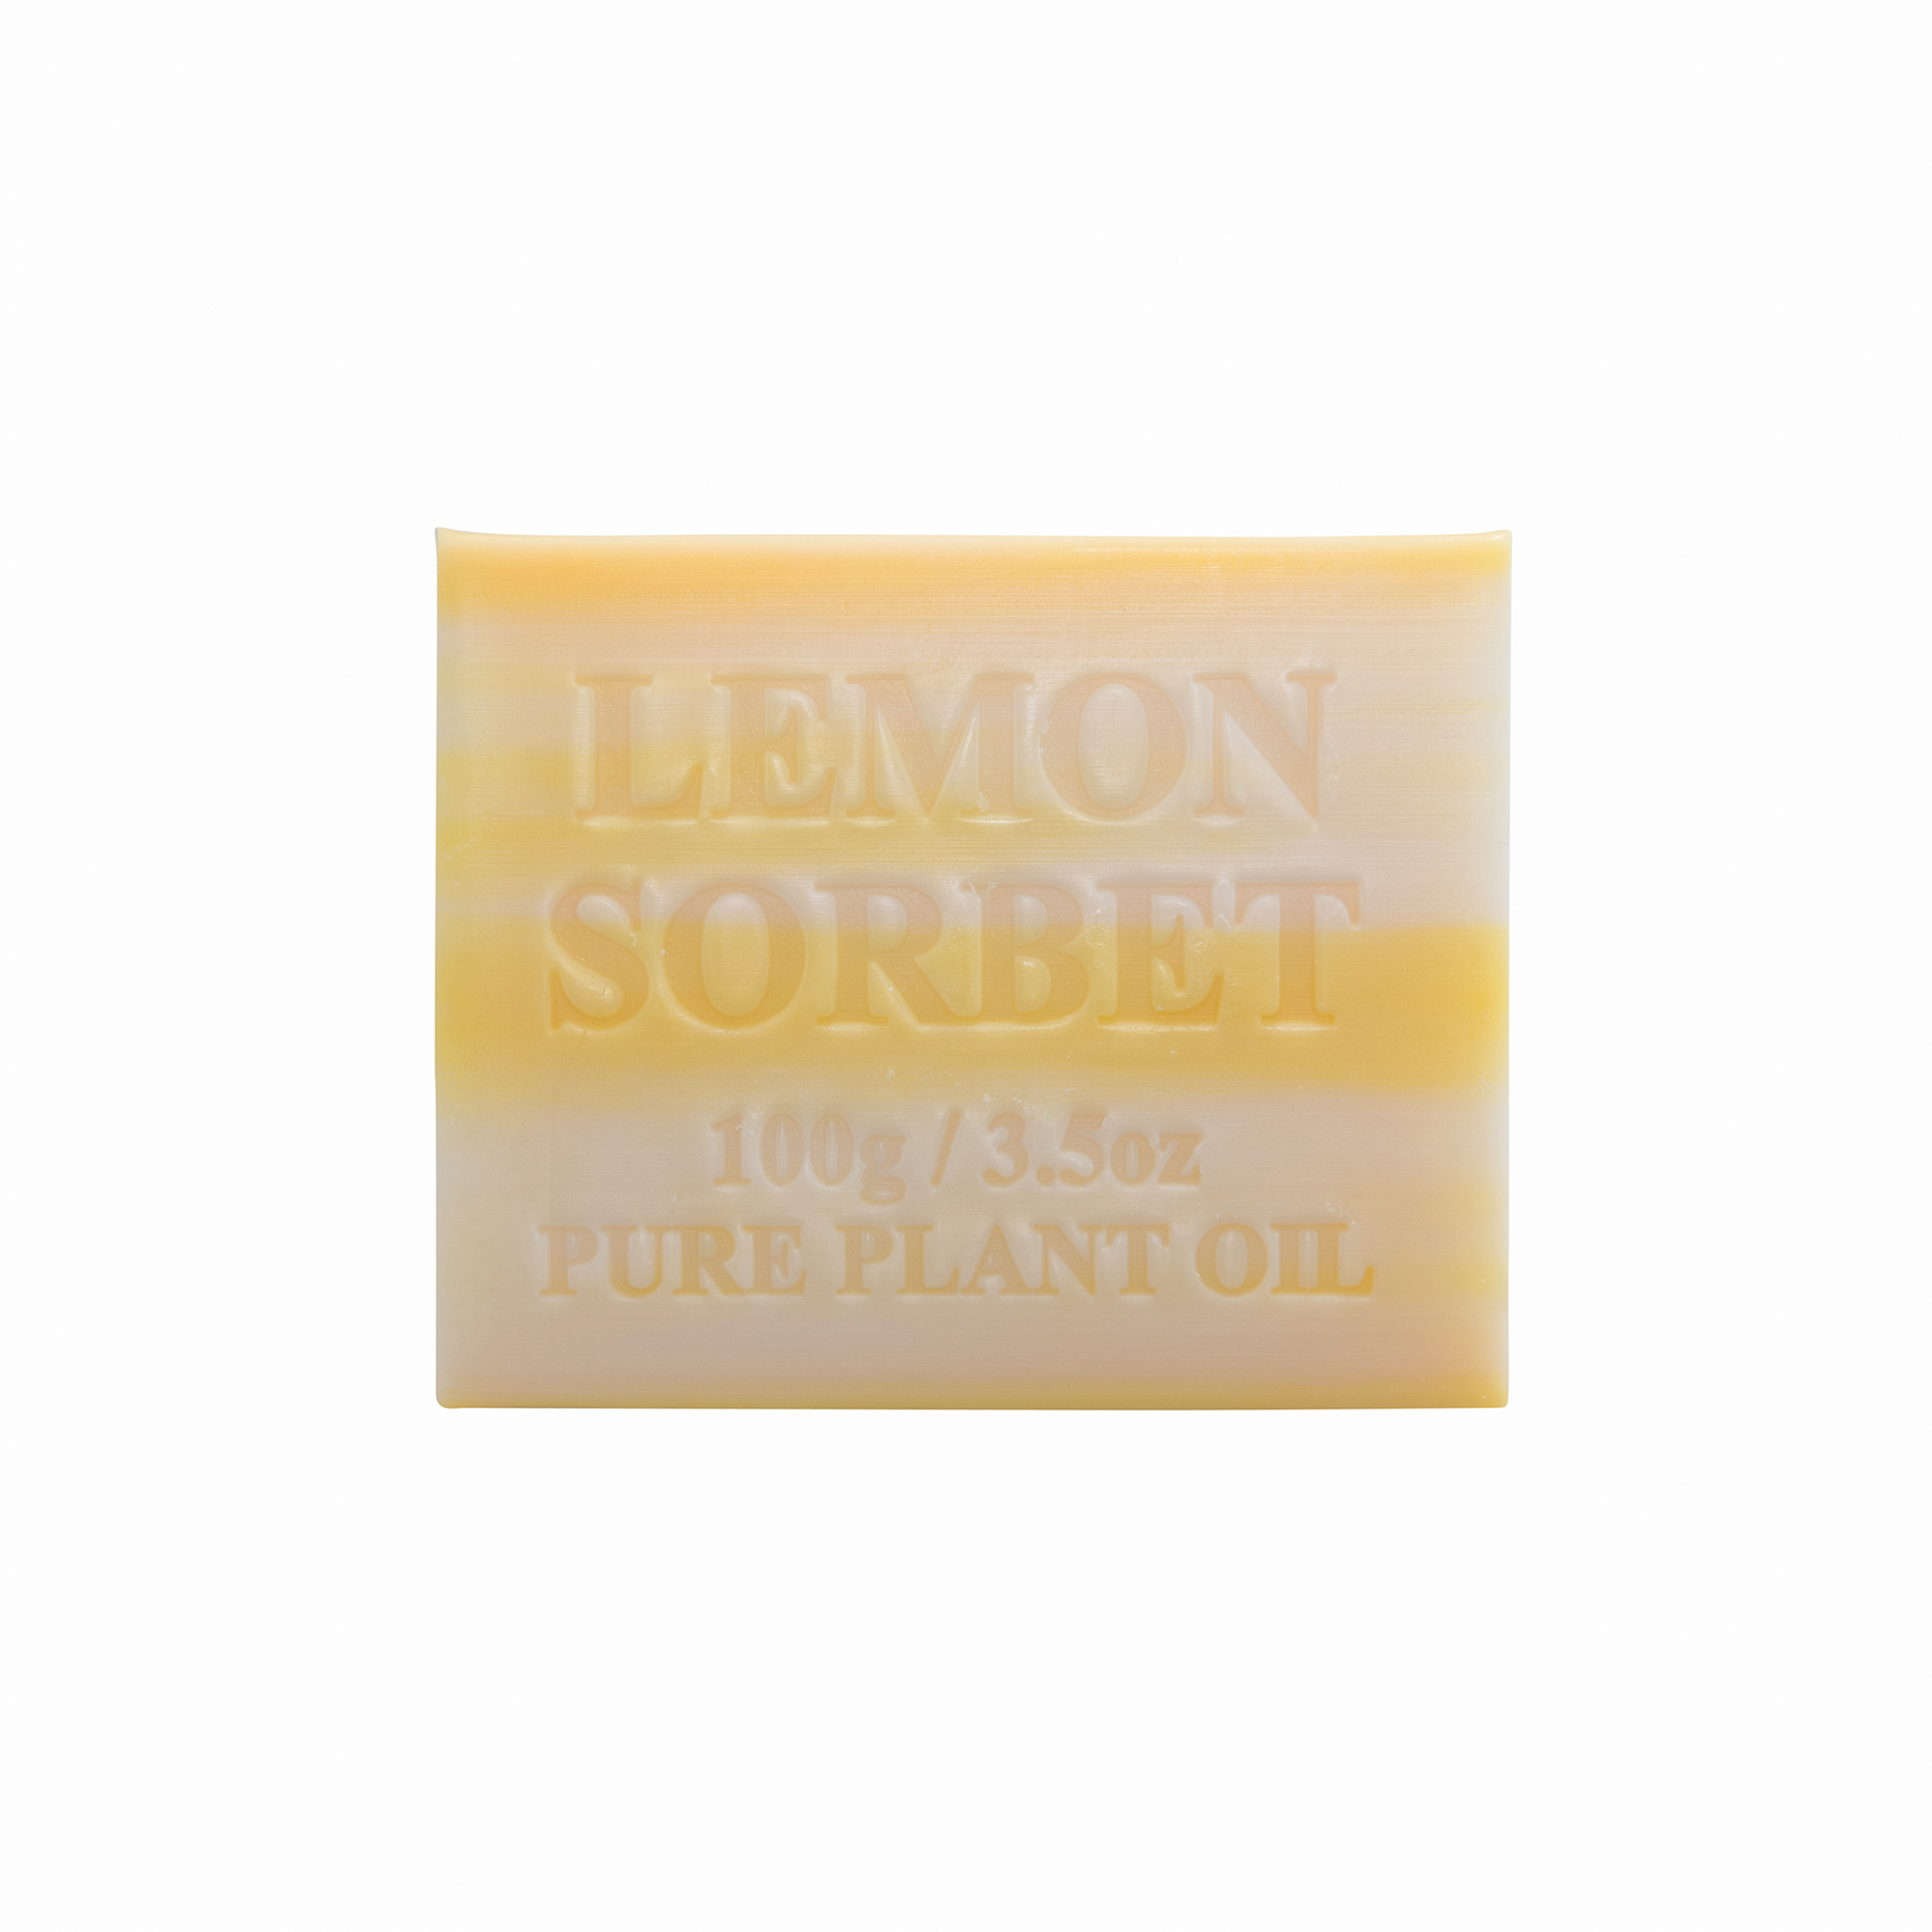 Lemon Sorbet 100g